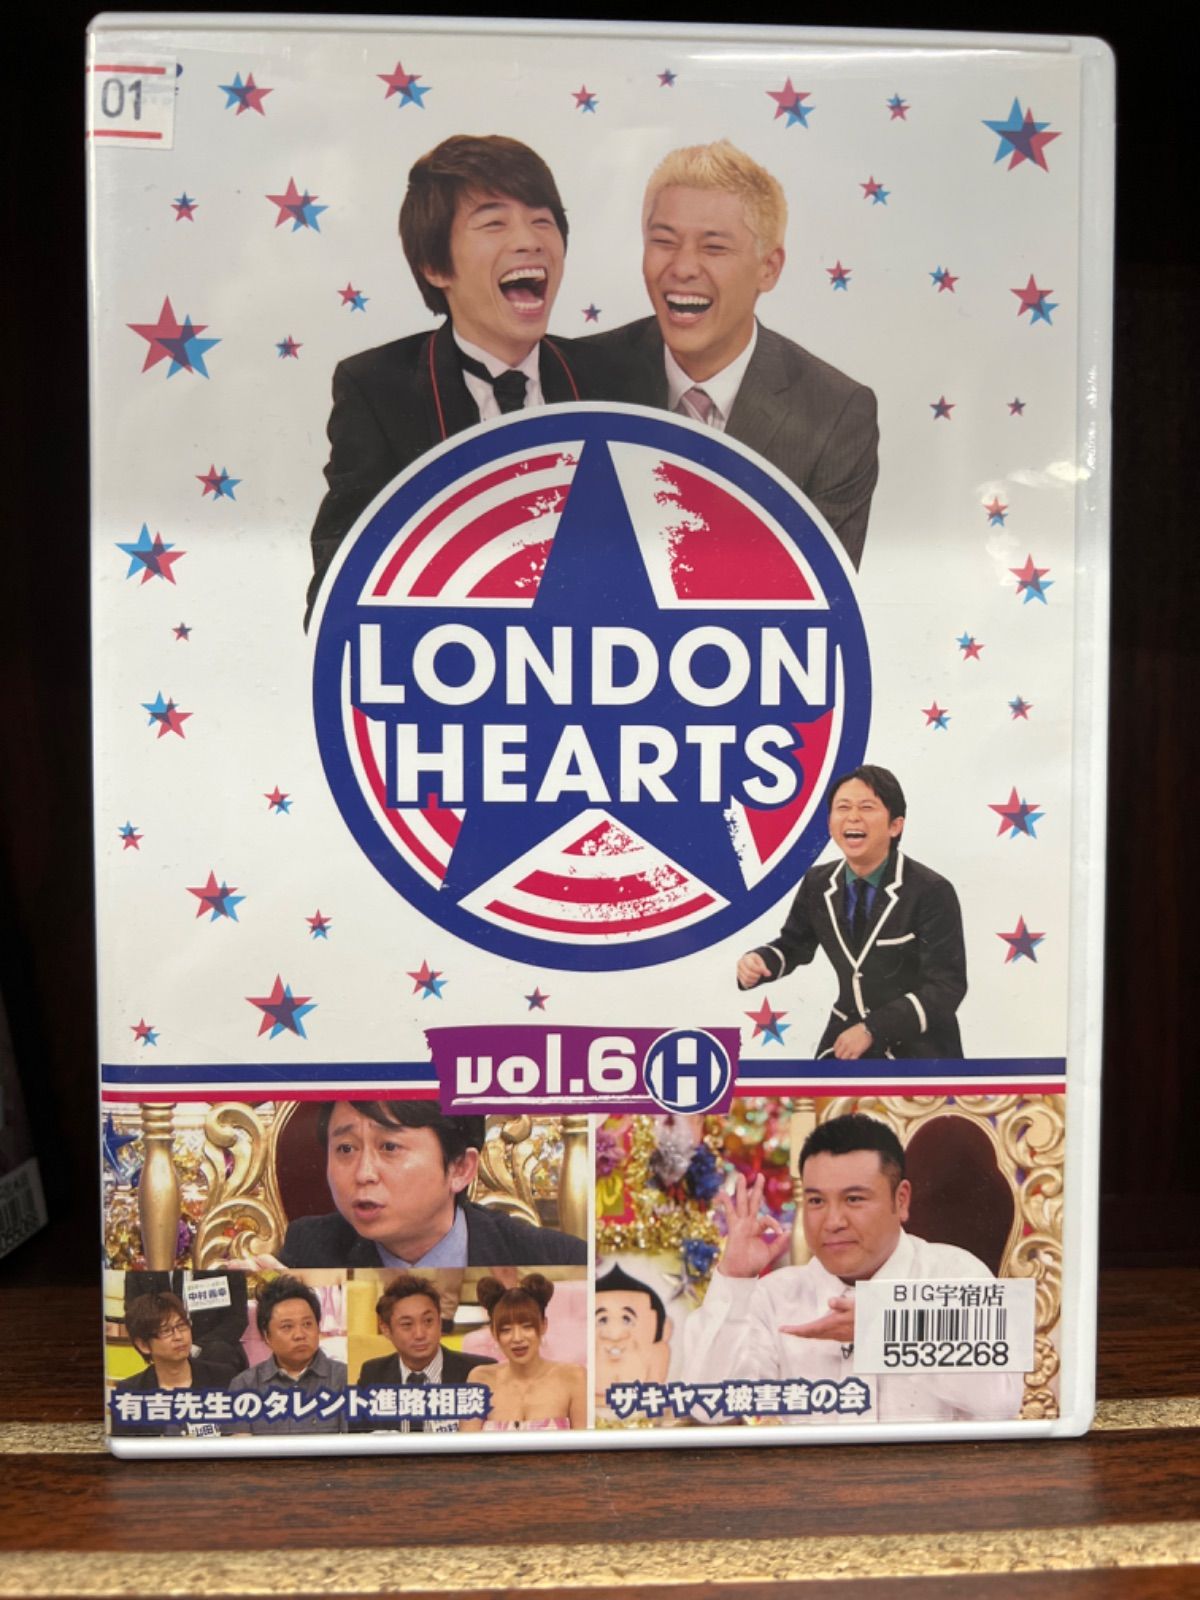 ロンドンハーツ vol.6-H DVD - ブルーレイ